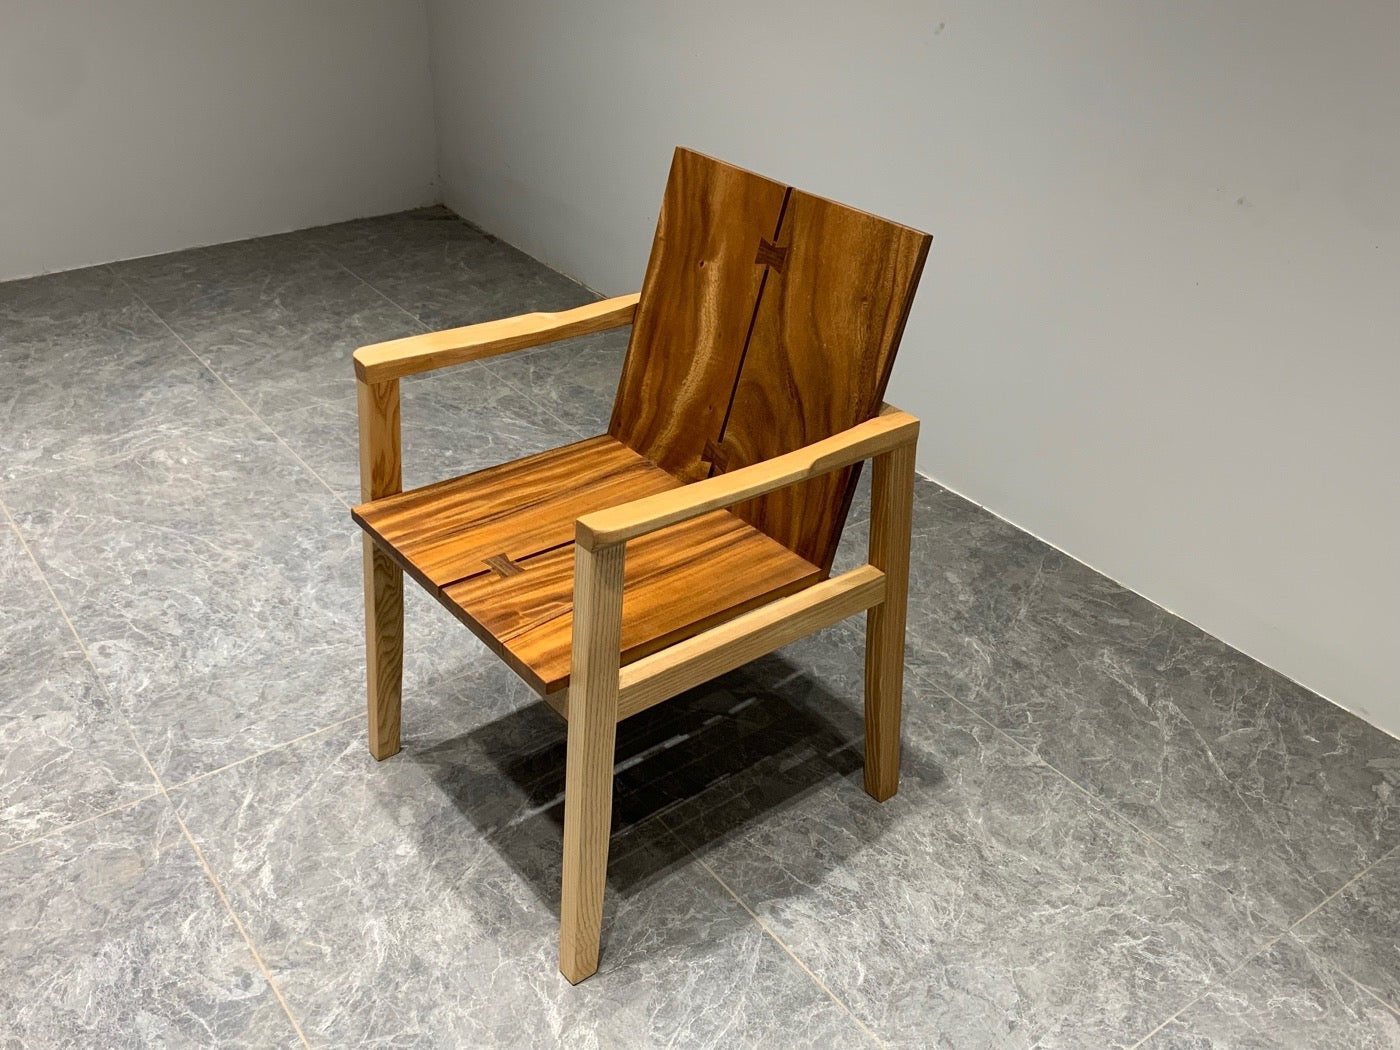 Cadeira Michigan Adirondack, cadeira de nogueira com encosto alto, cadeira traseira, cadeira de madeira